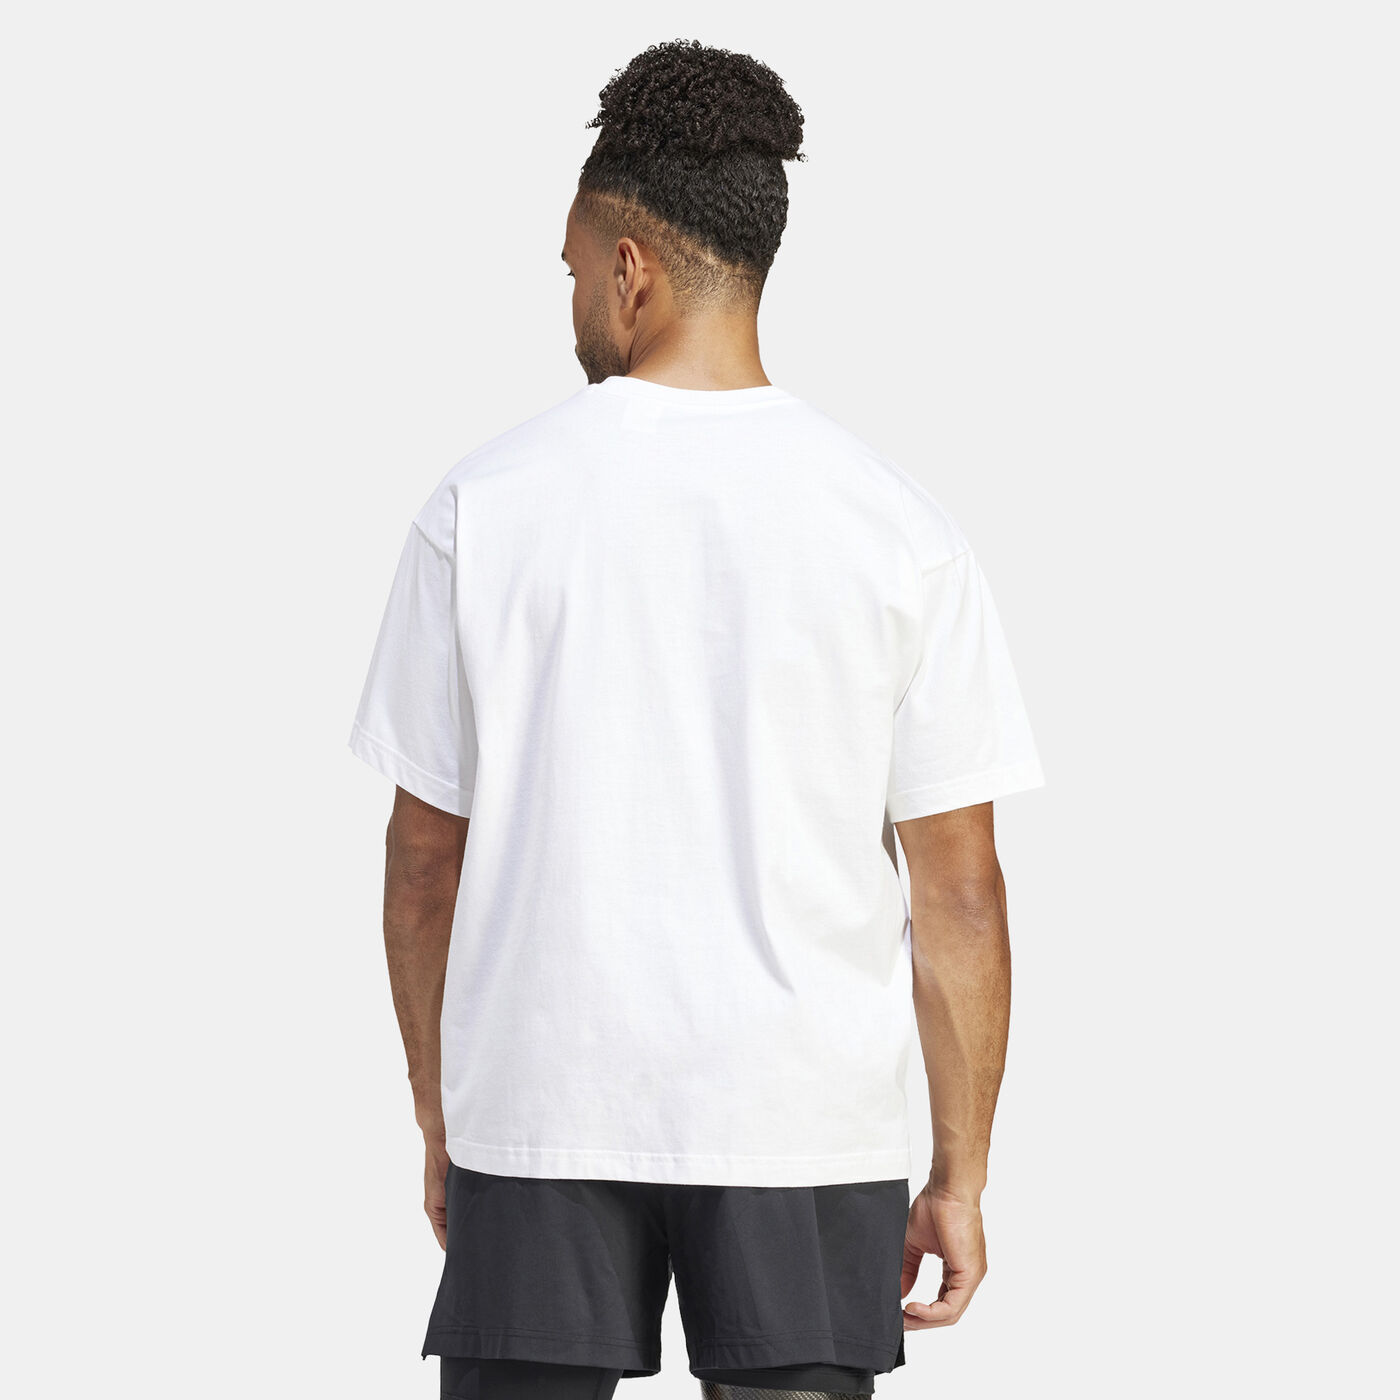 Men's Yoga Printed T-Shirt